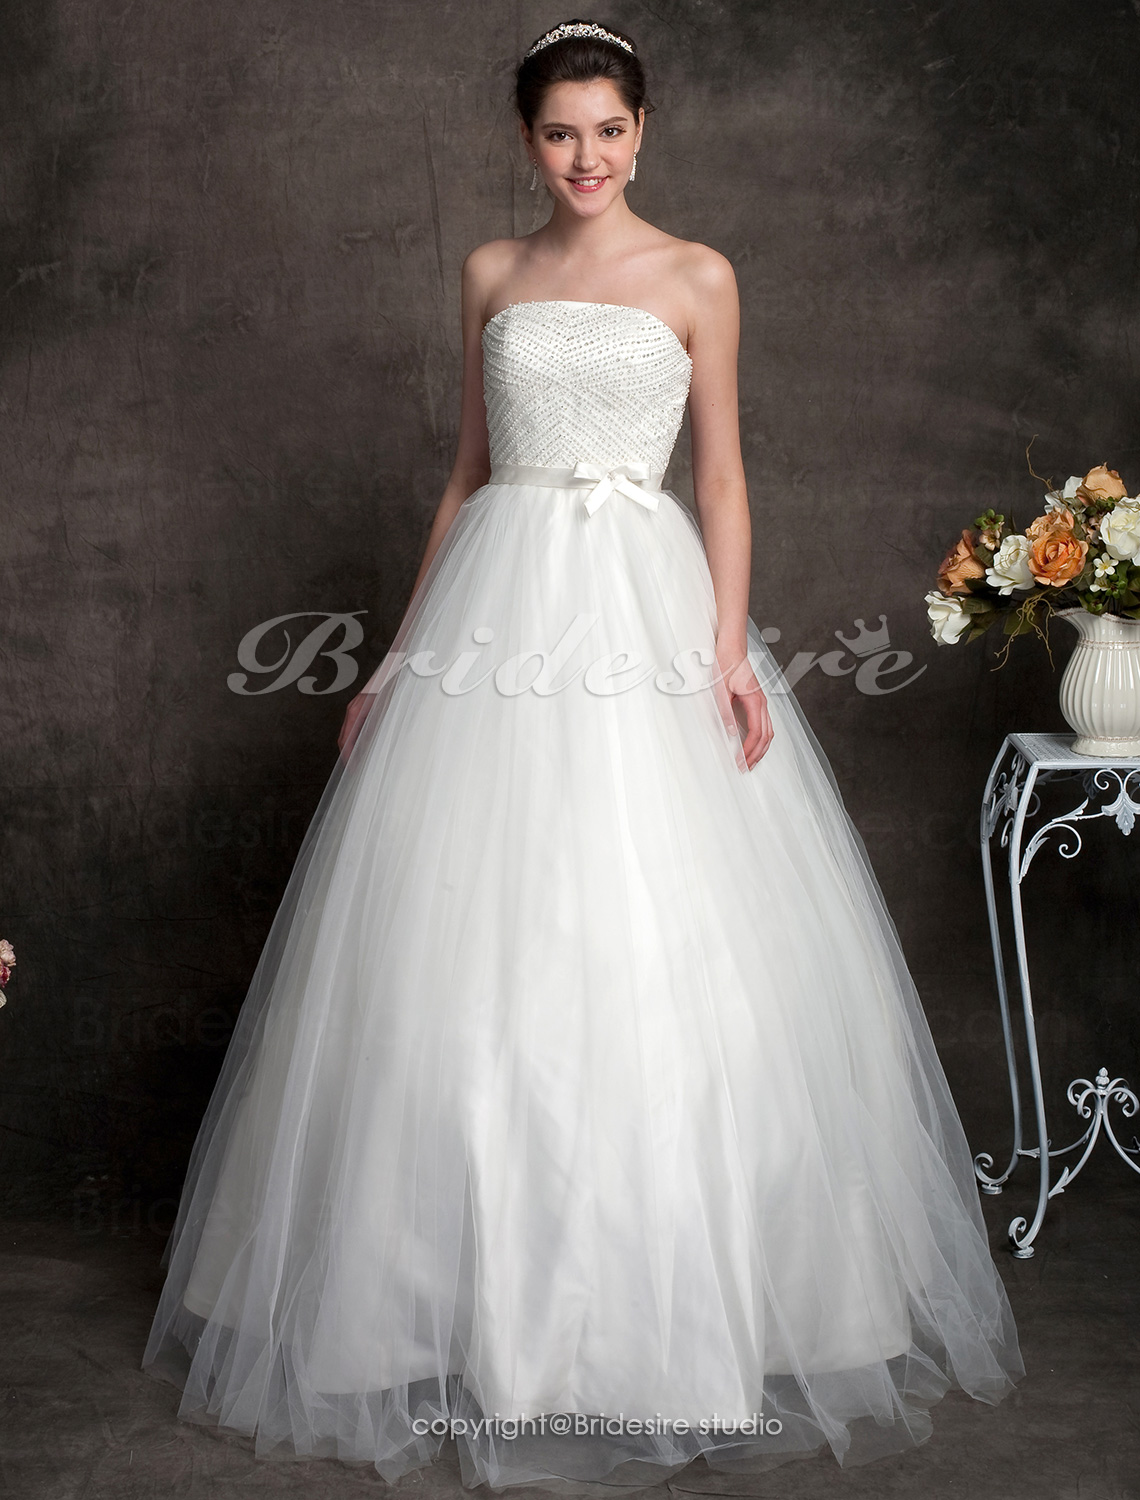 Ball Gown Tulle Floor-length Strapless Wedding Dress